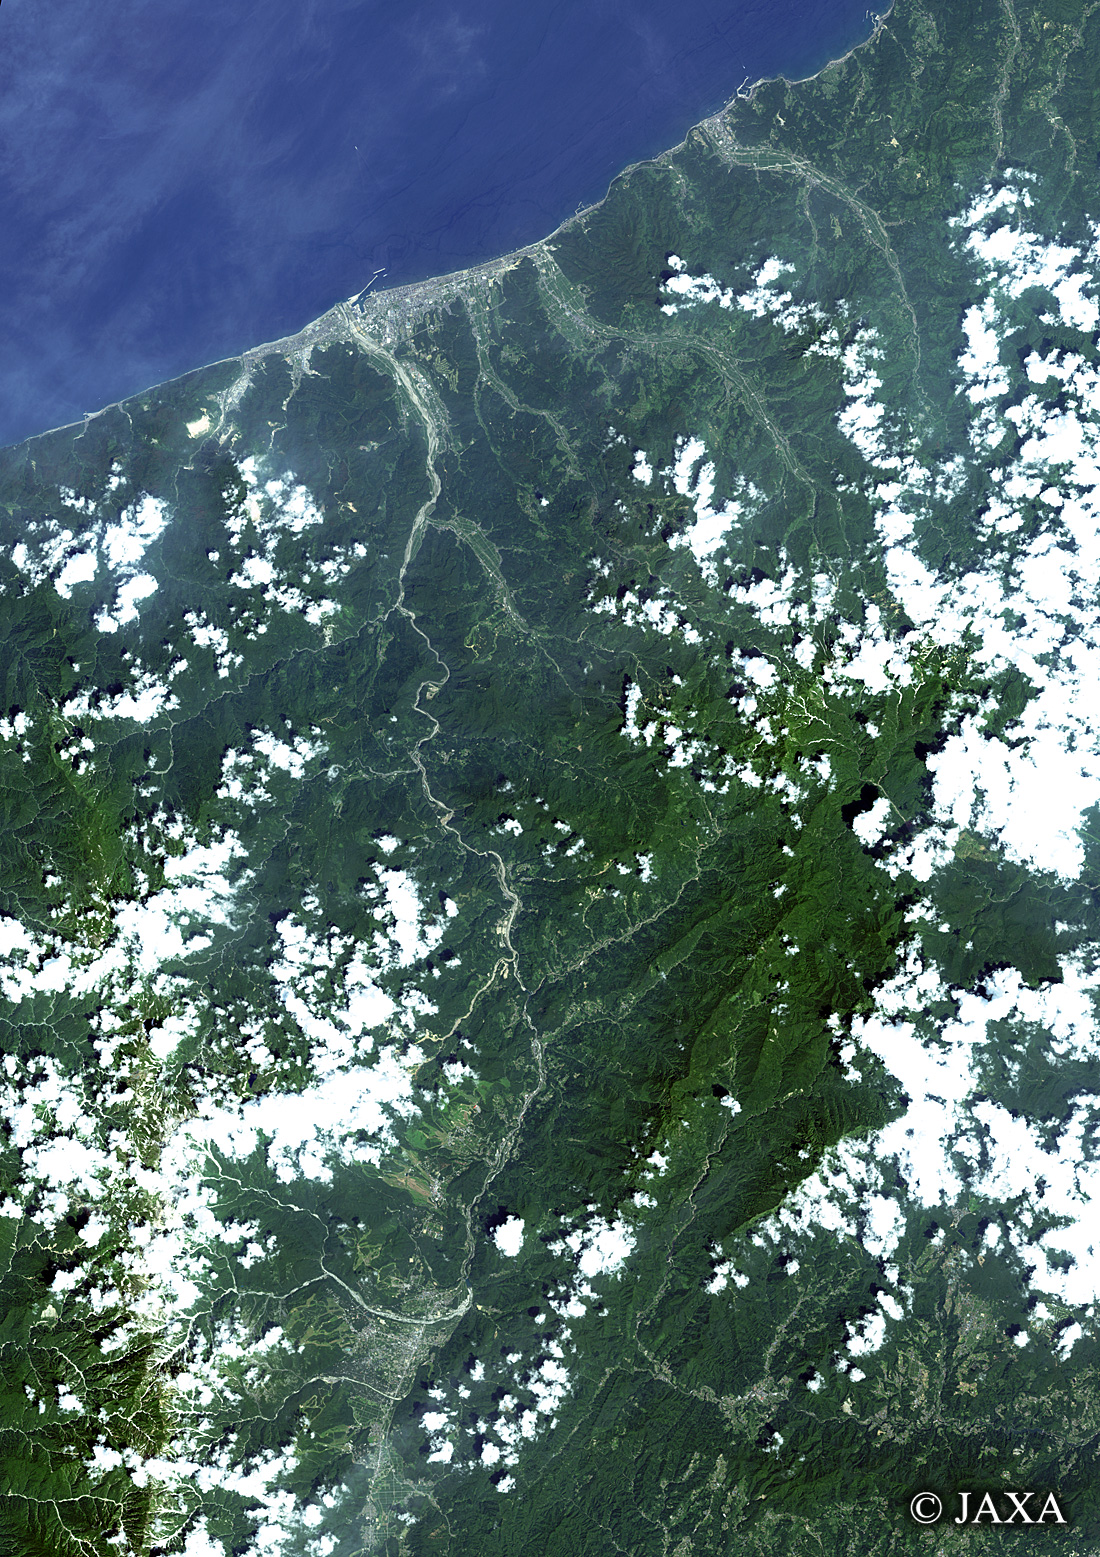 だいちから見た日本の都市 糸魚川市周辺:衛星画像